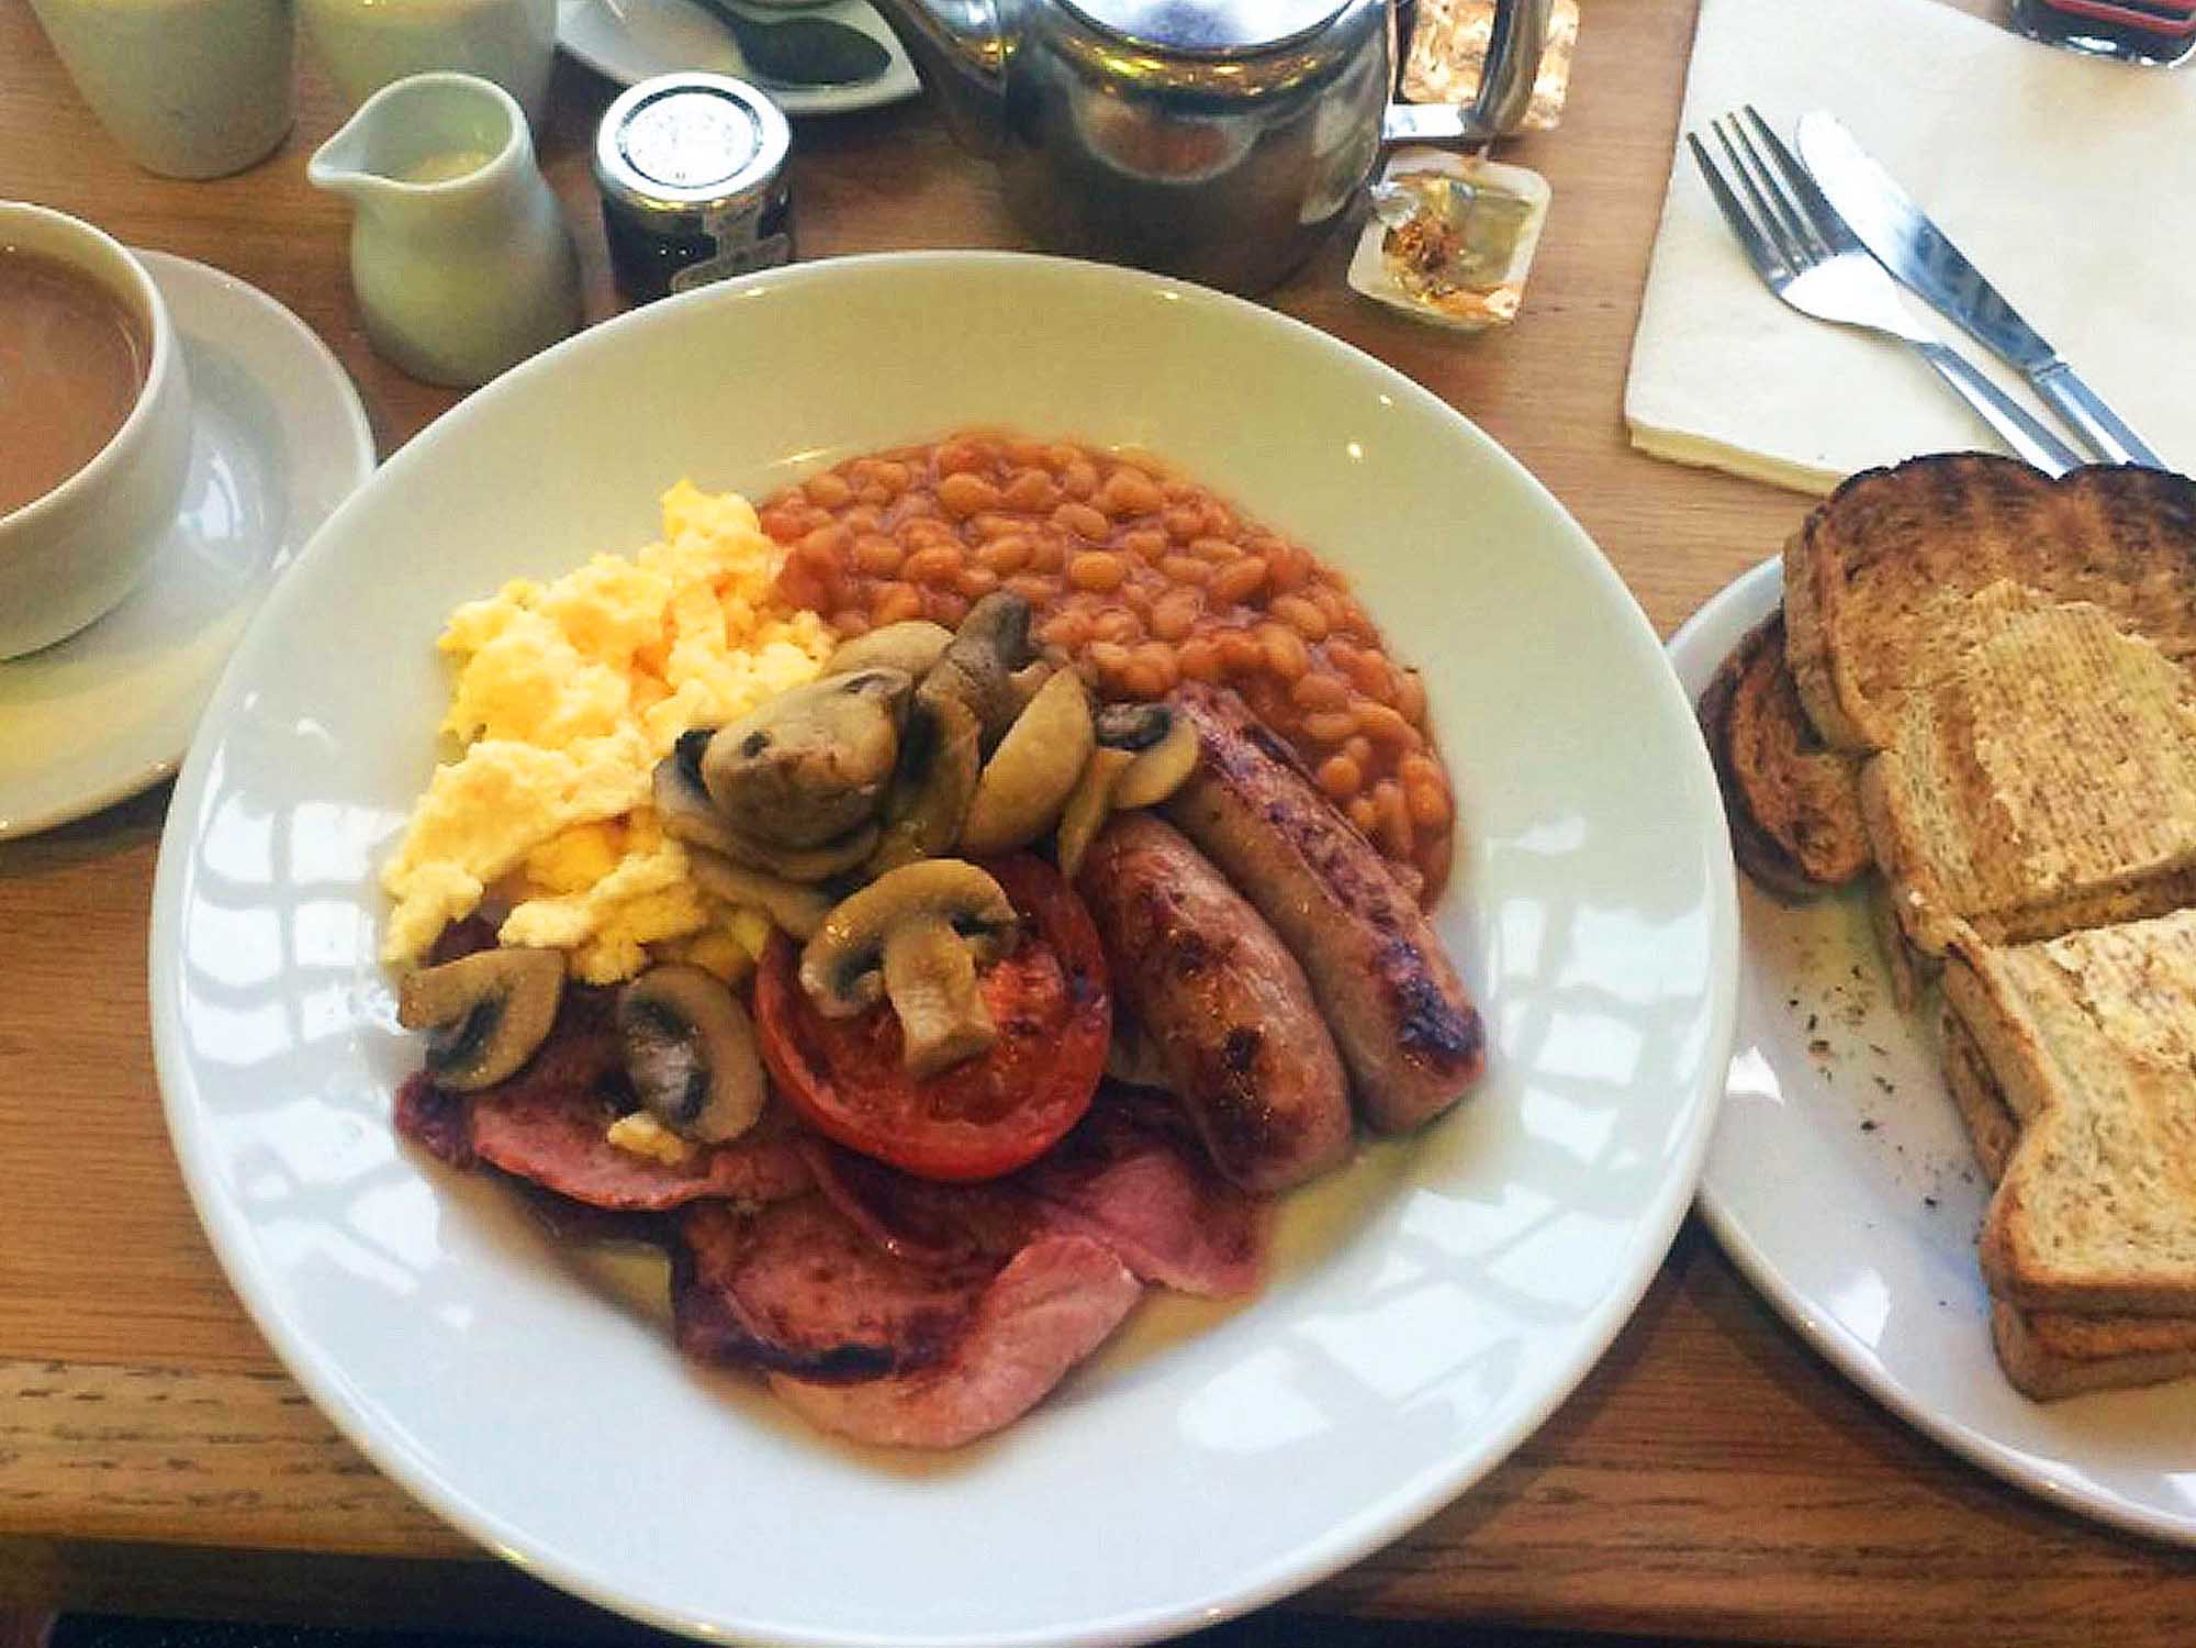 Best Breakfast in Newcastle - Café 21